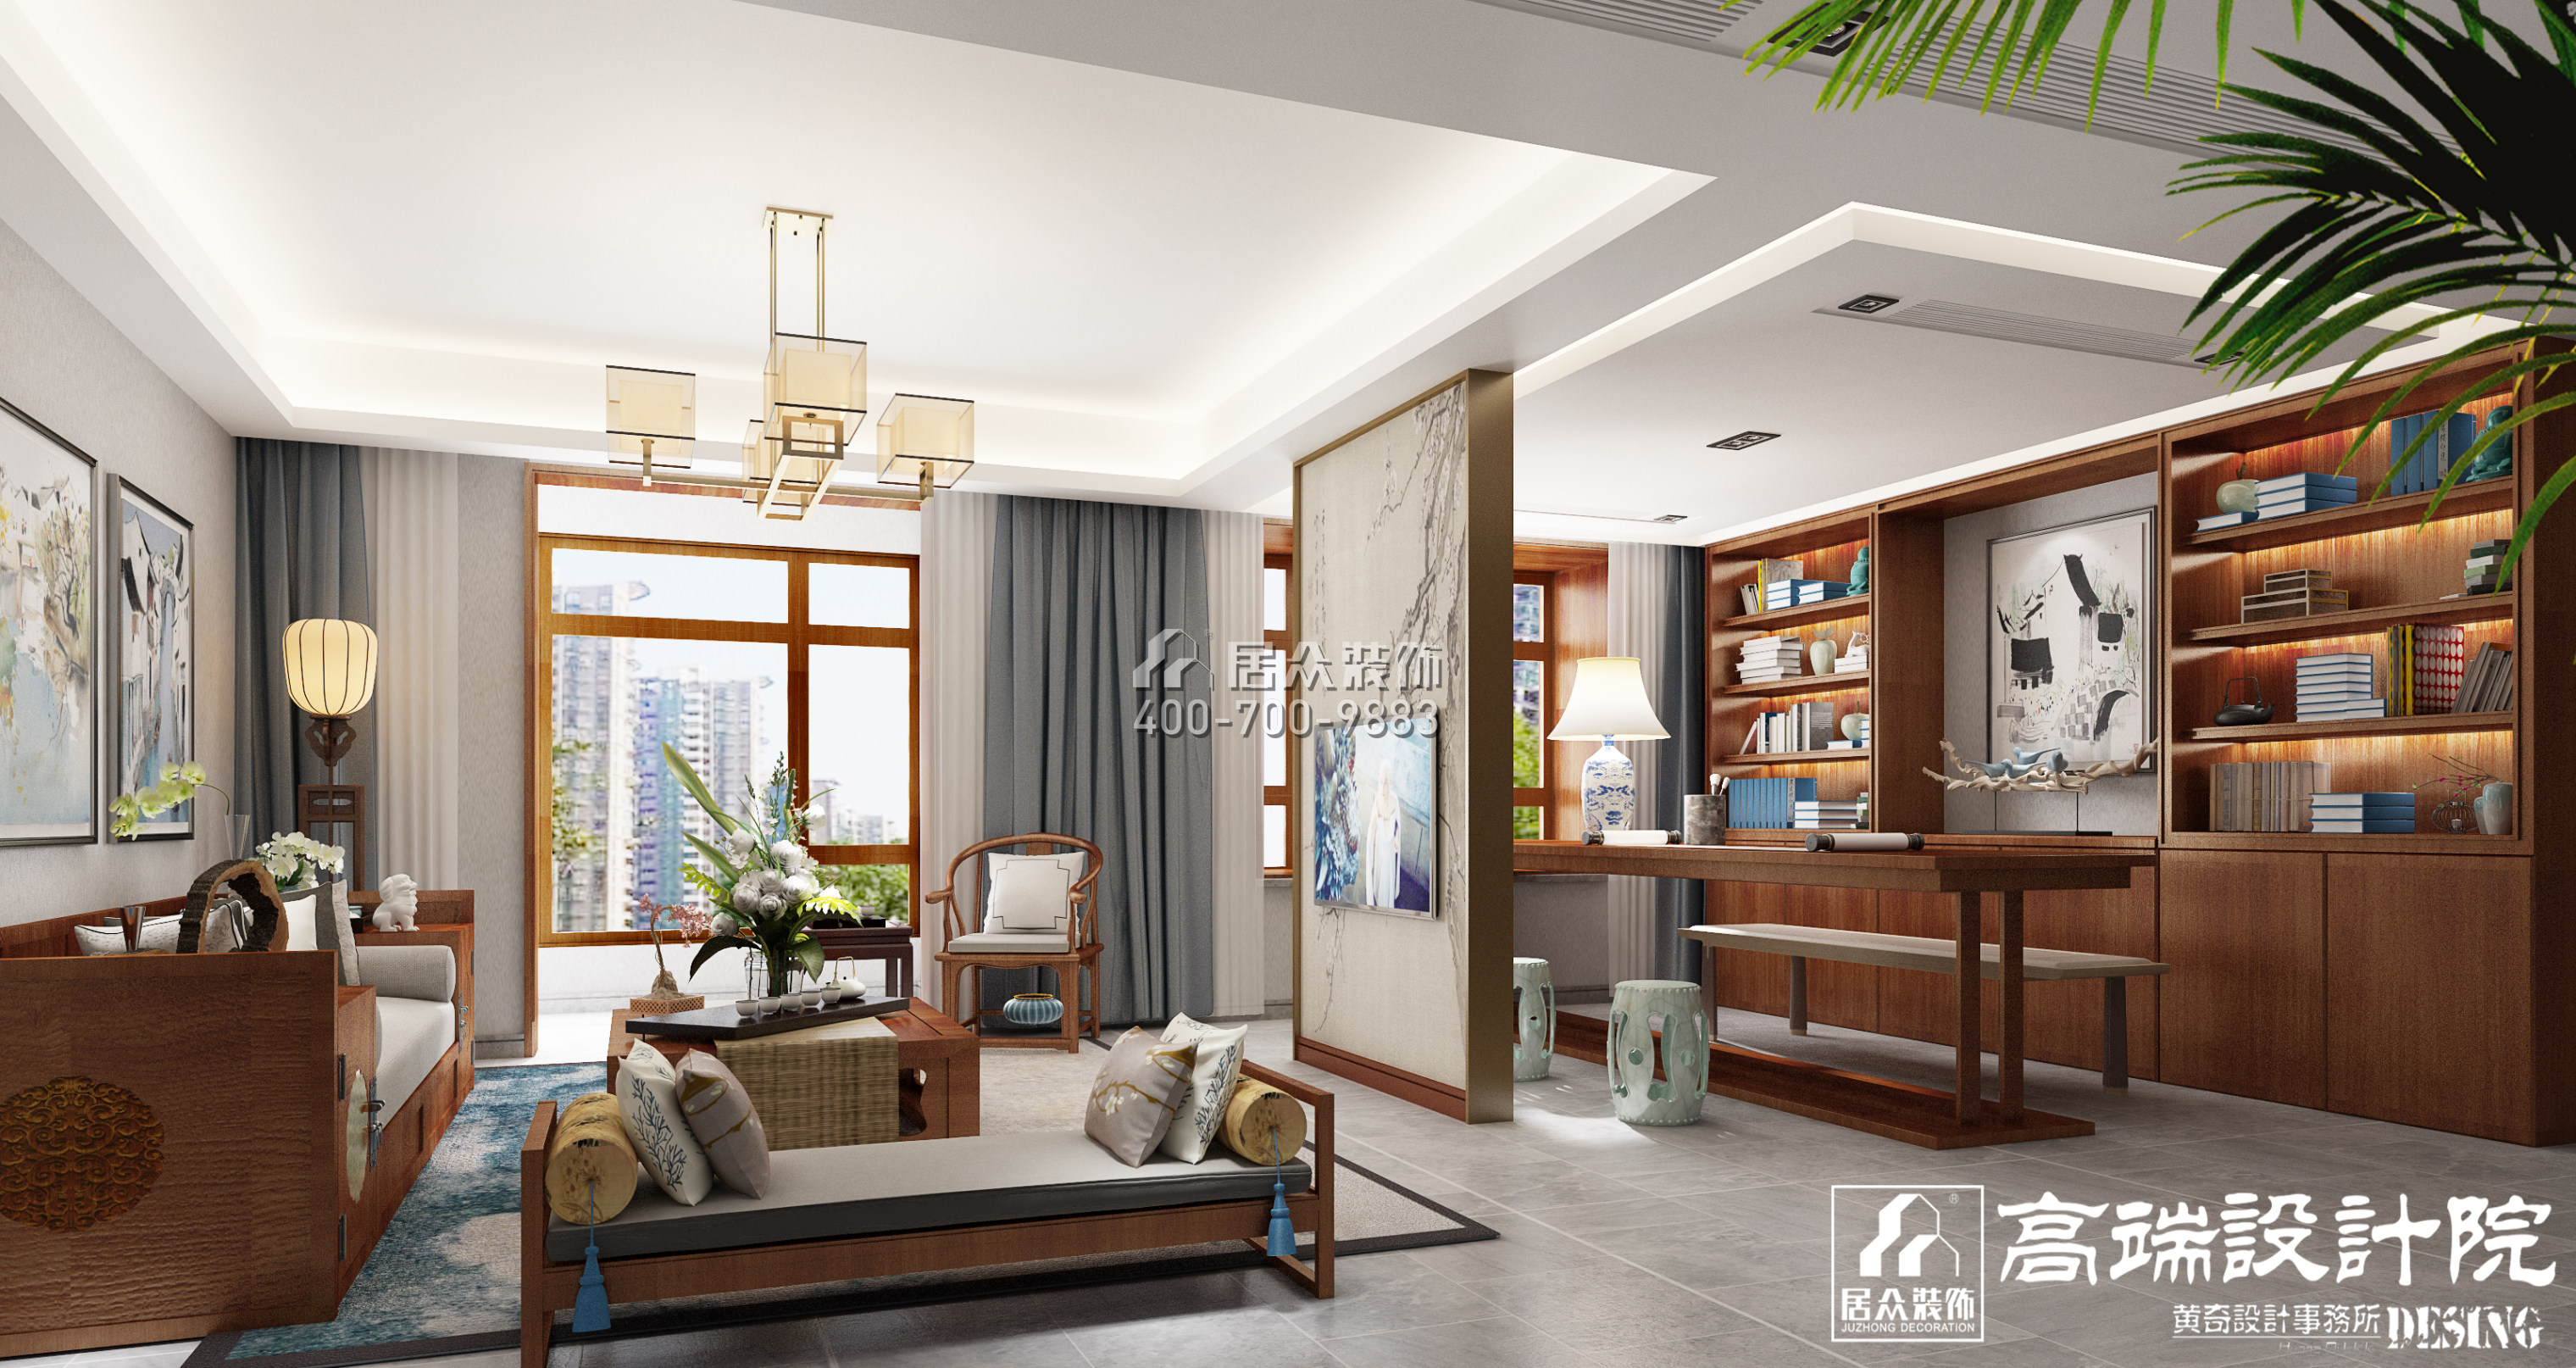 湘江世纪城160平方米中式风格平层户型客厅装修效果图